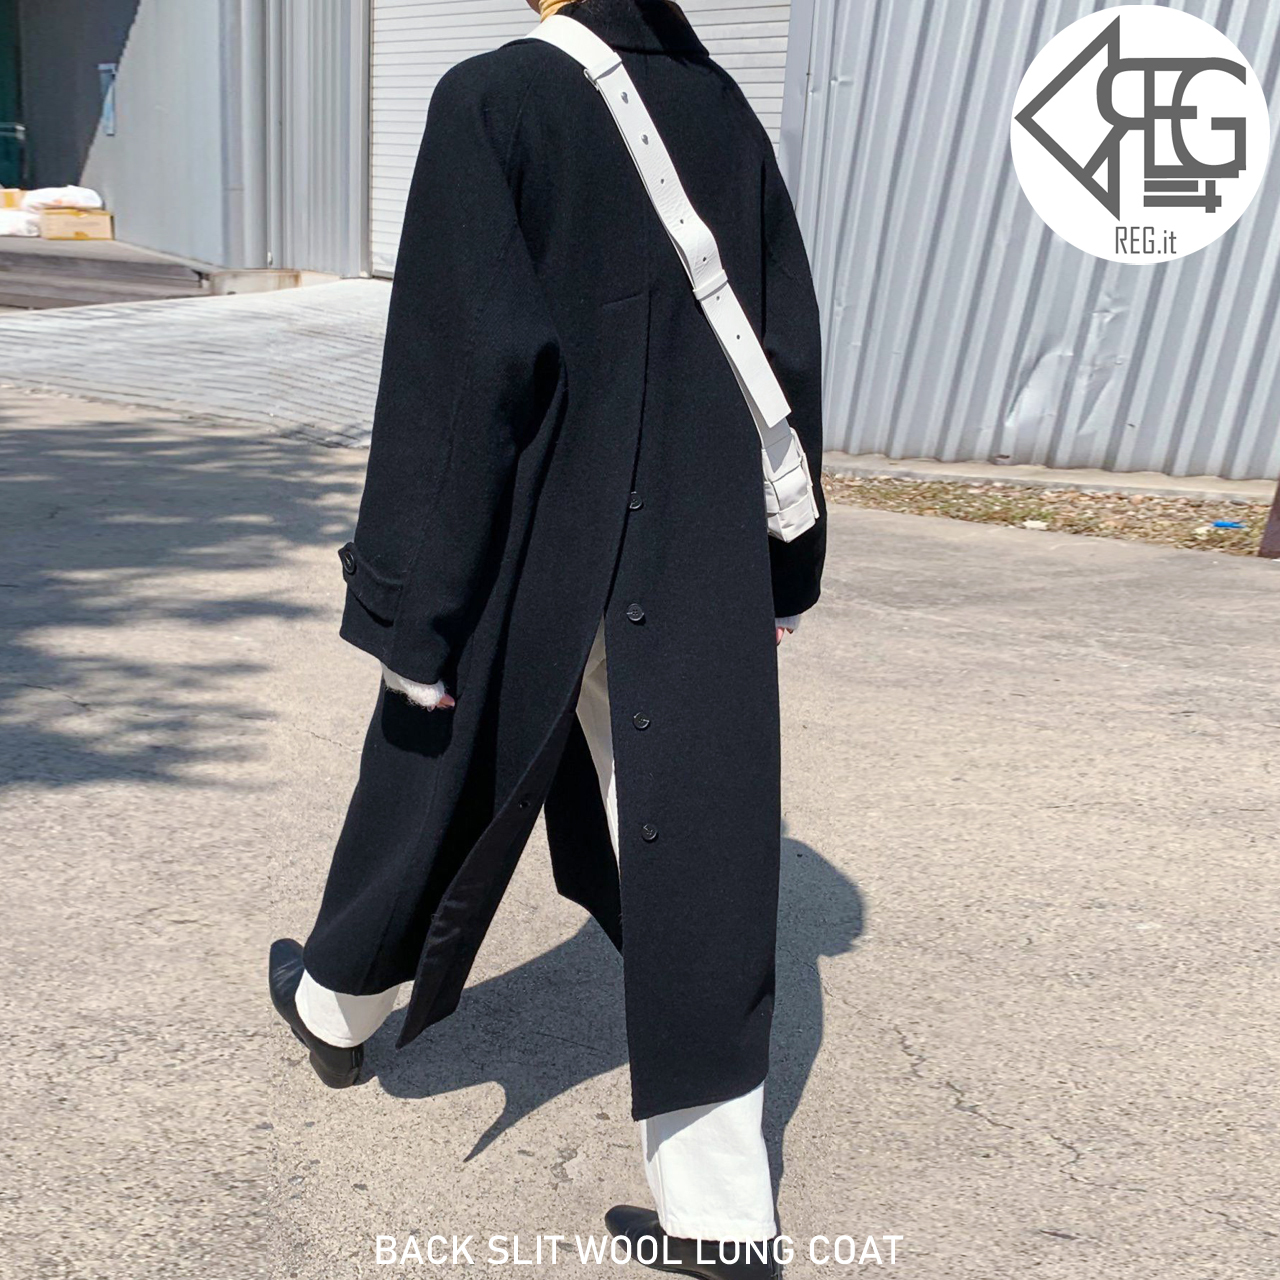 Regit Back Slit Wool Long Coat Black 韓国ファッション 10代代30代 ロングコート ウール混 スリット おしゃれ かわいい 着回し あたたかい アウター Reg It